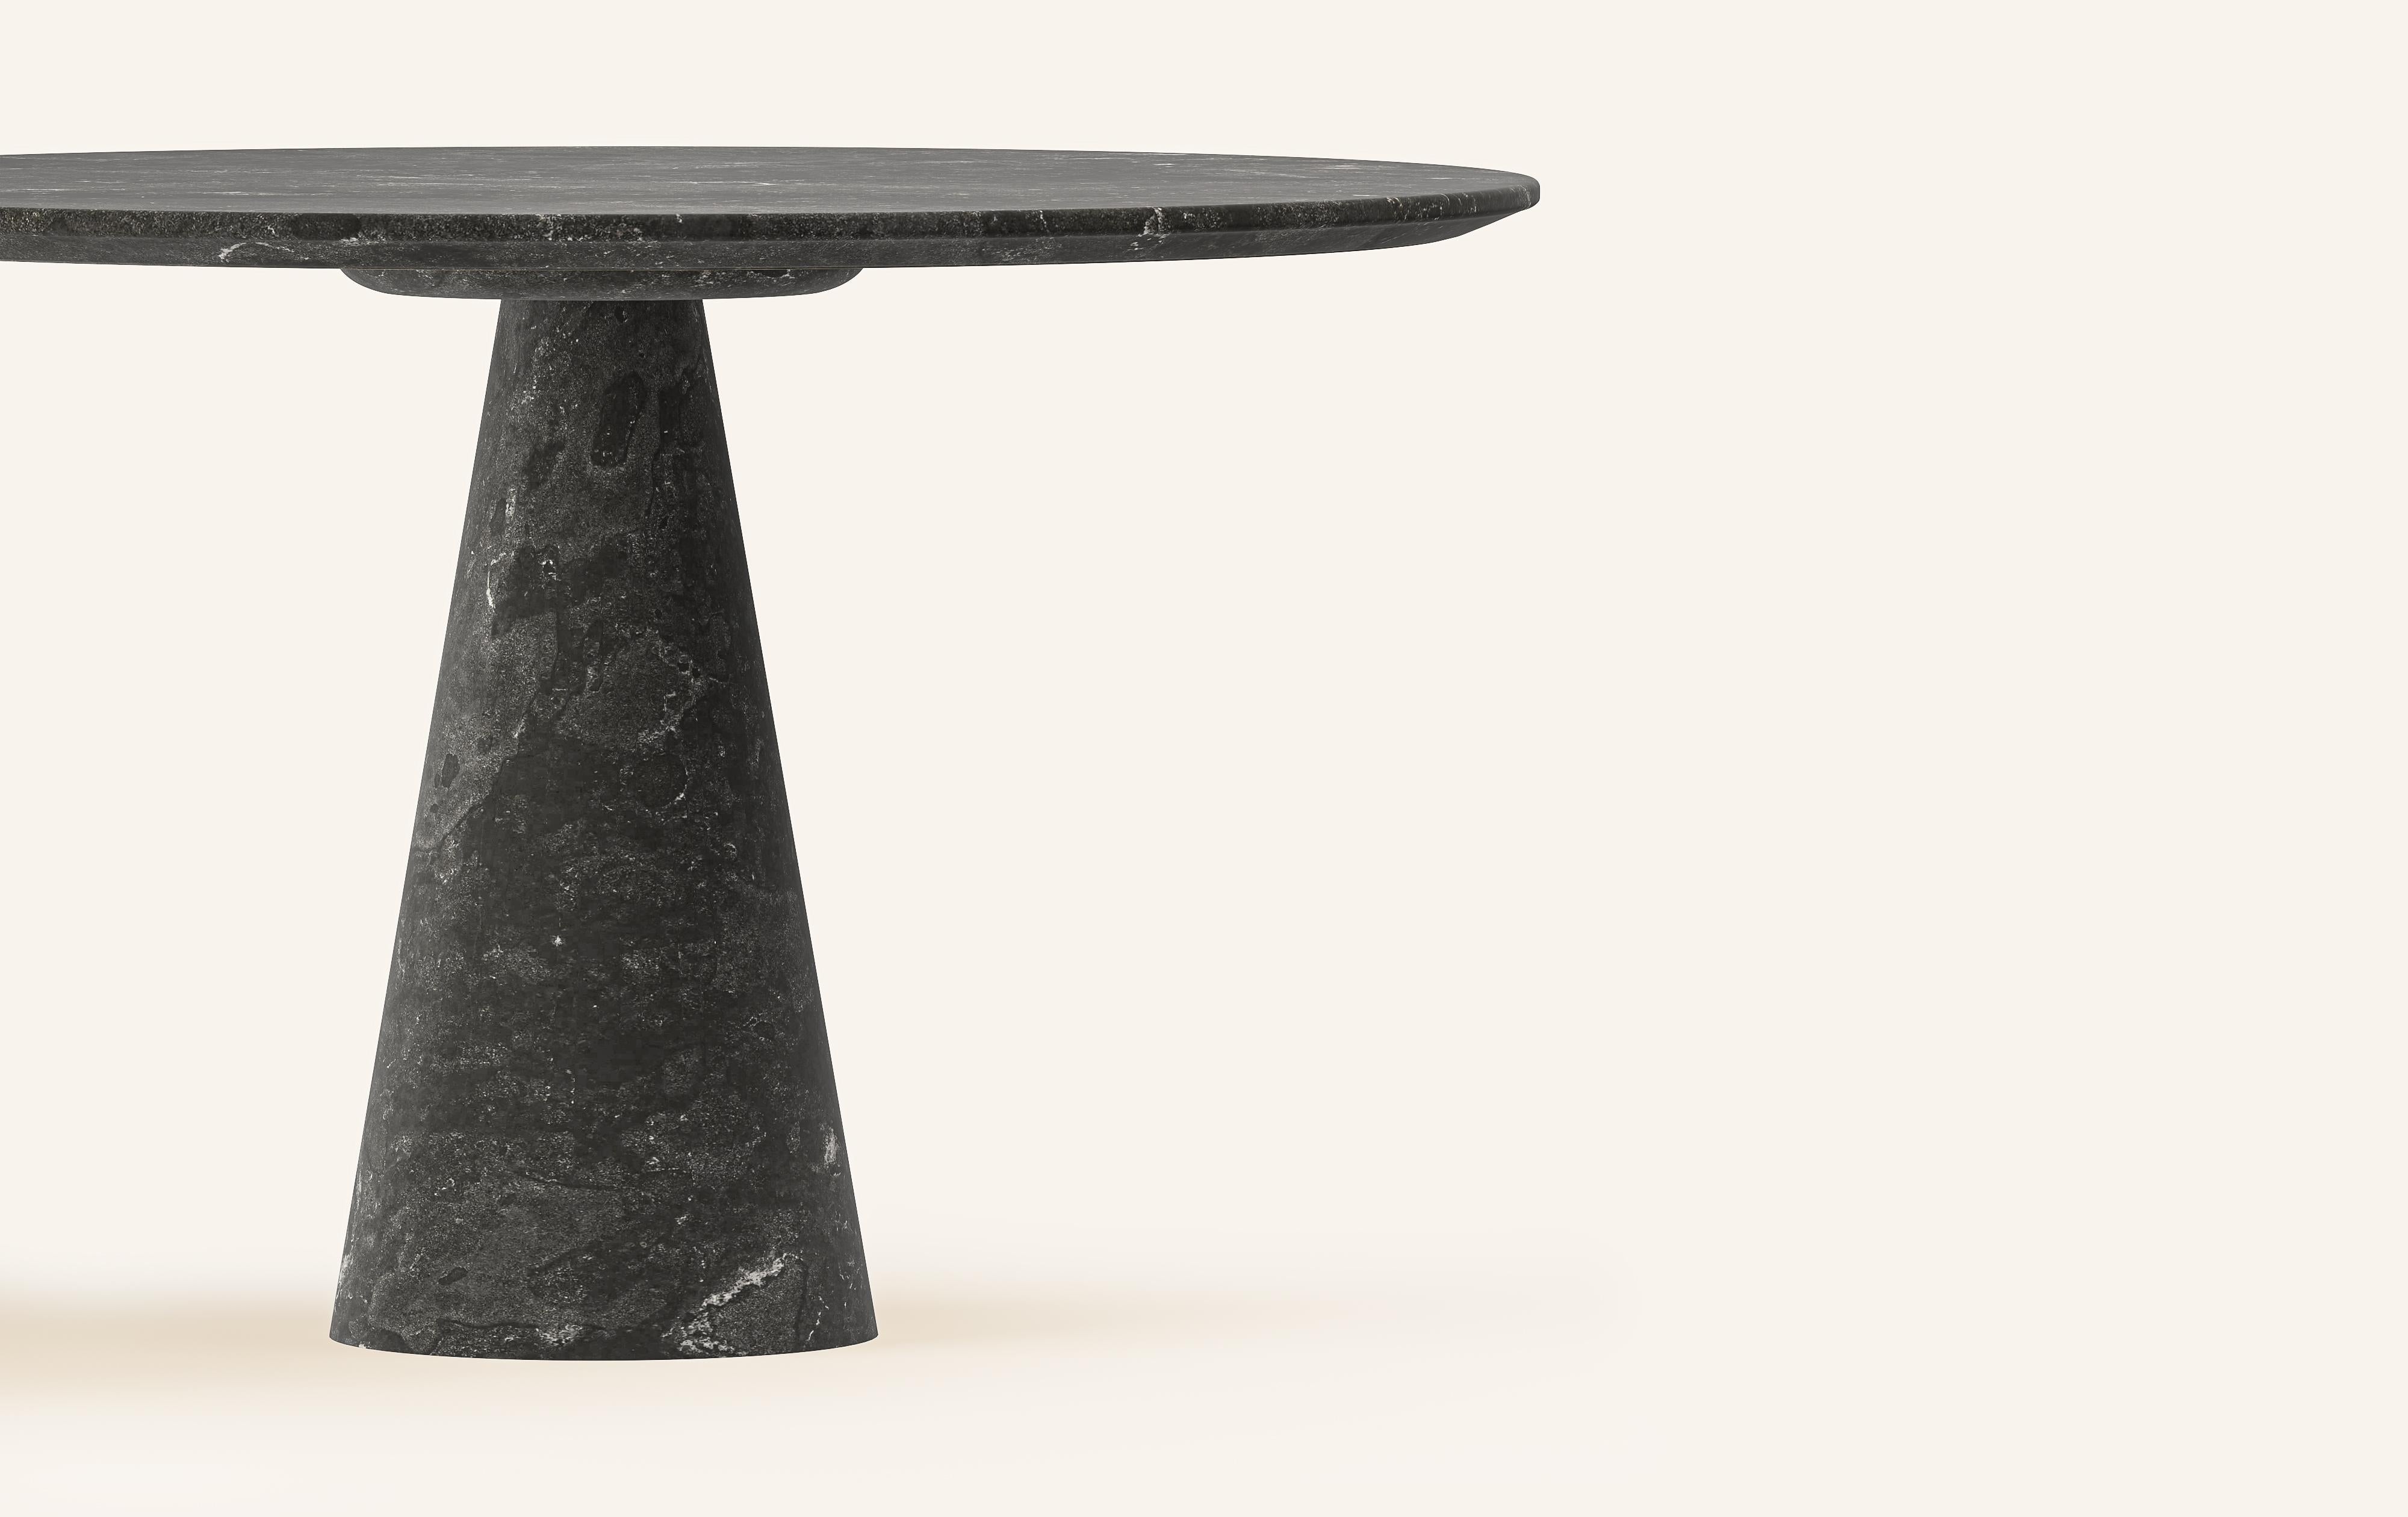 Organic Modern FORM(LA) Cono Round Dining Table 48”L x 48”W x 30”H Nero Petite Granite For Sale